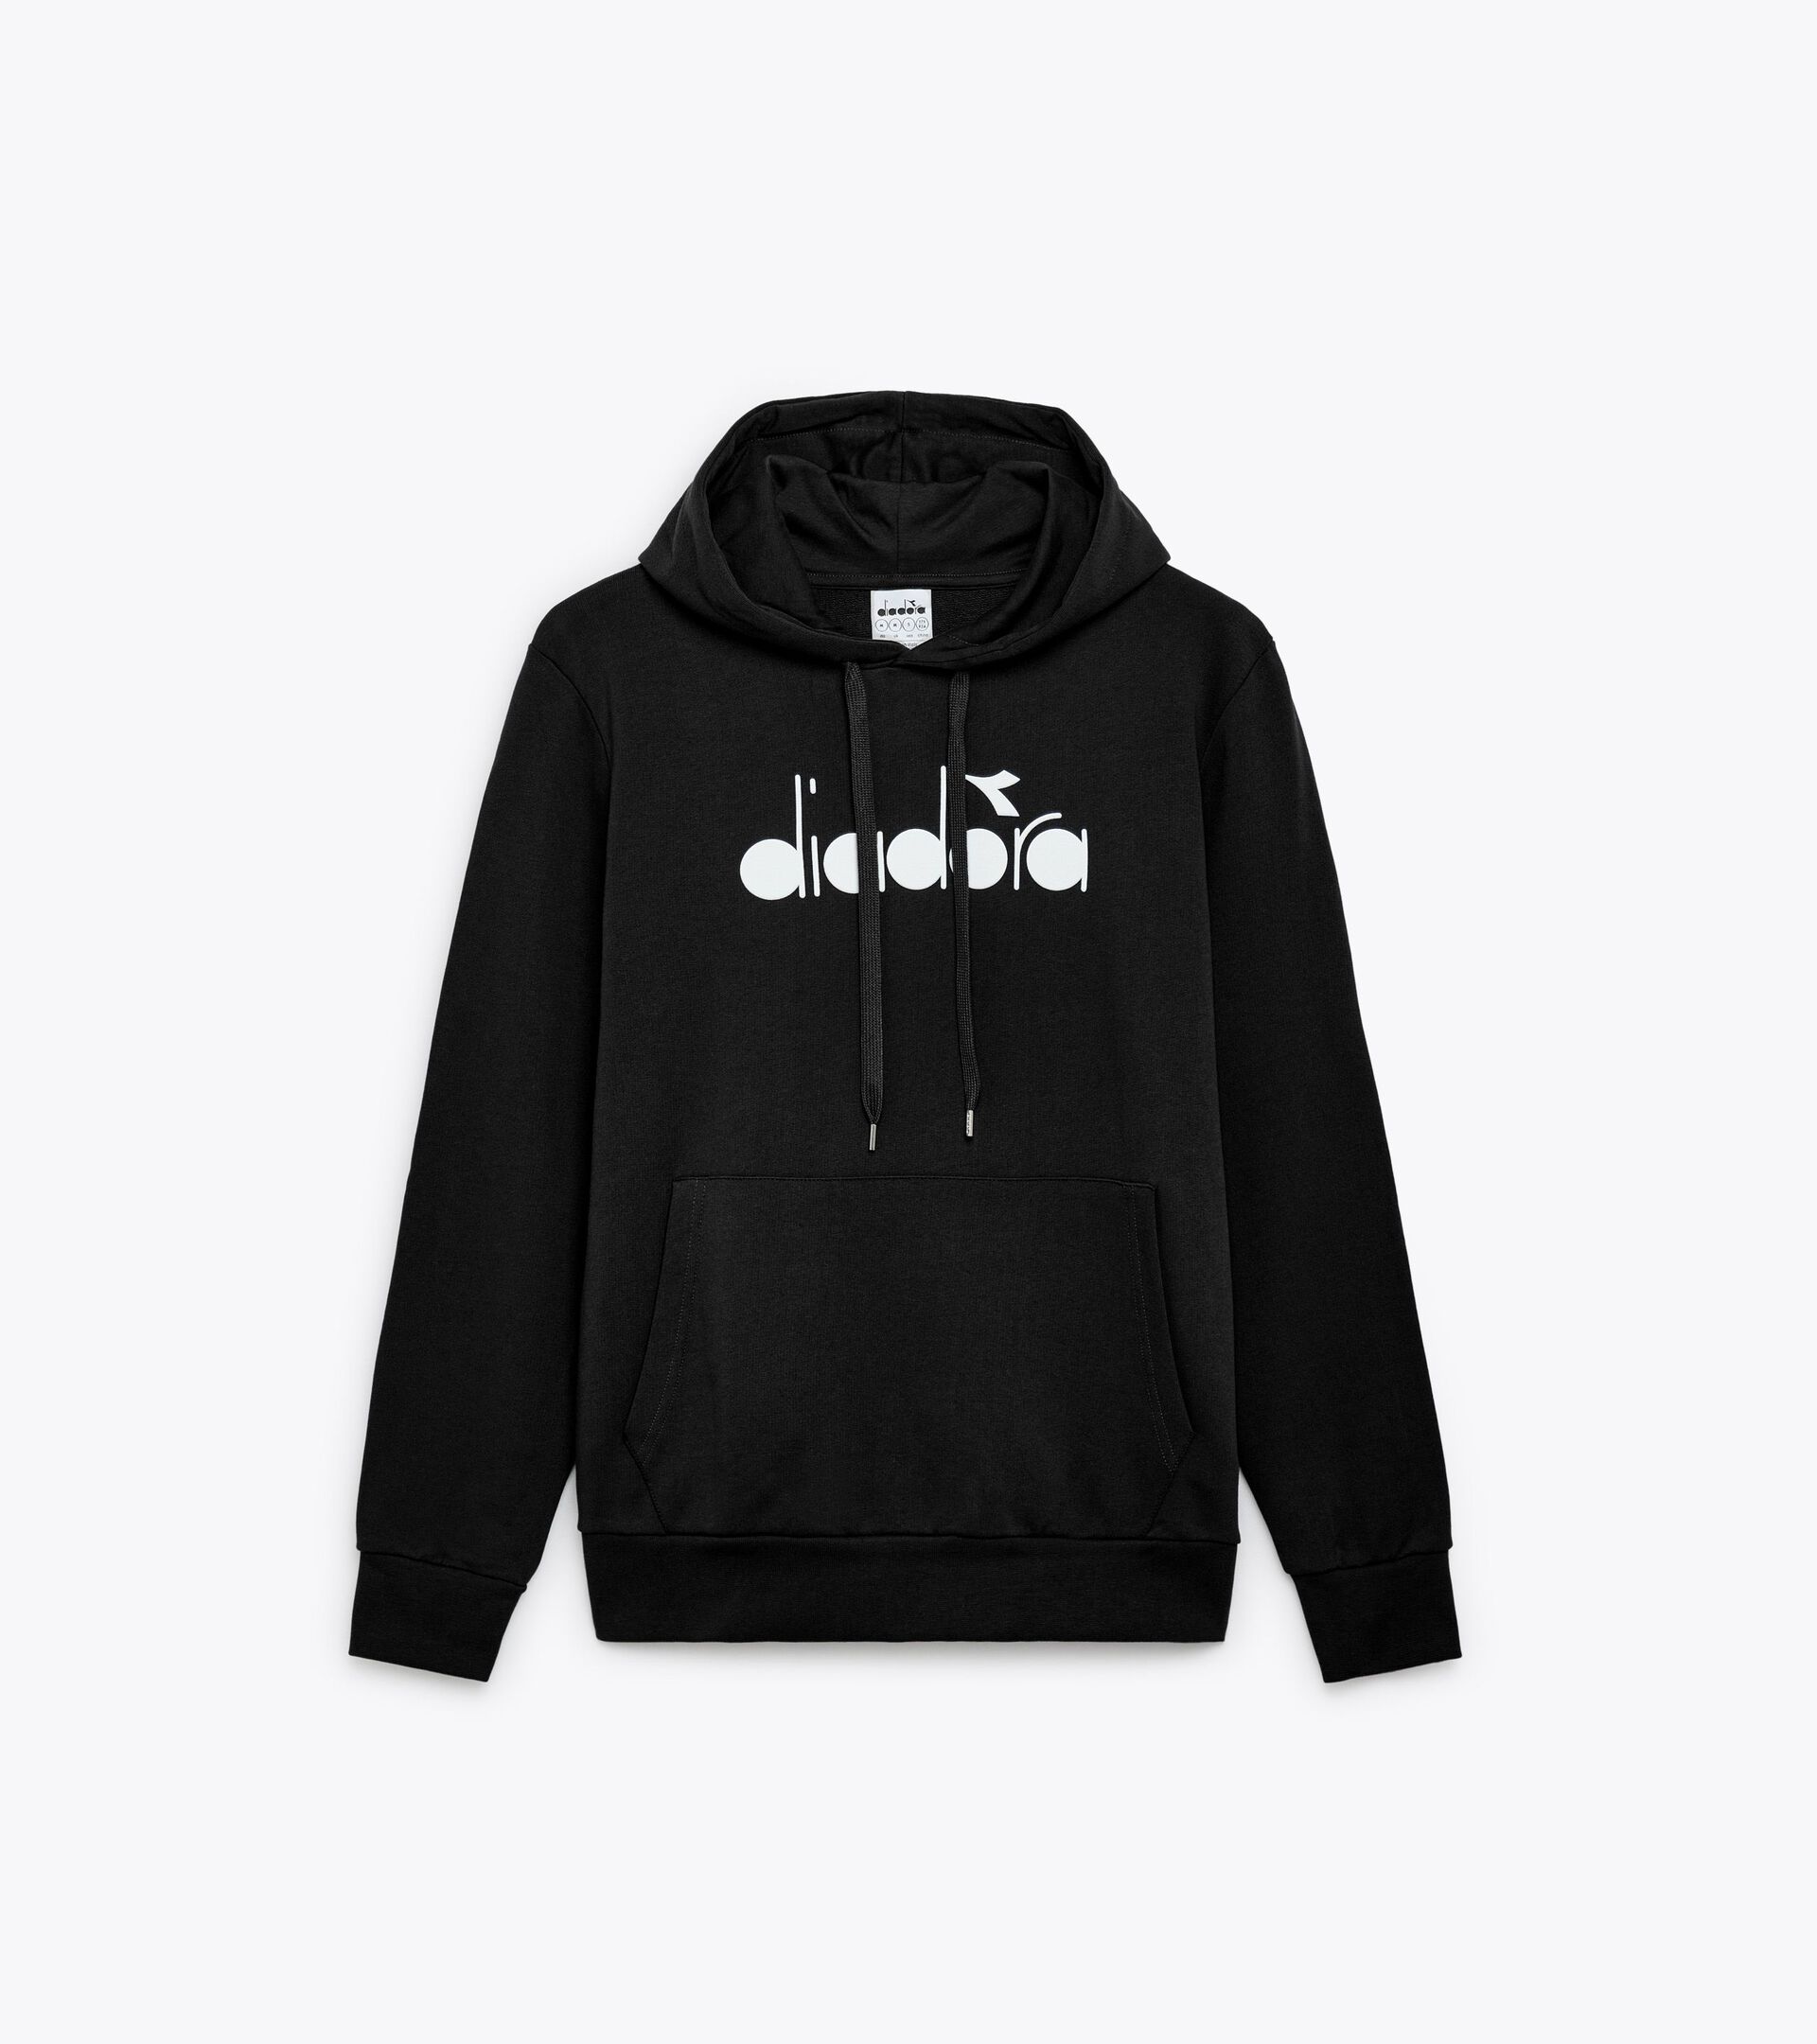 Sporty hoodie - Made in Italy - Gender Neutral HOODIE LOGO BLACK - Diadora